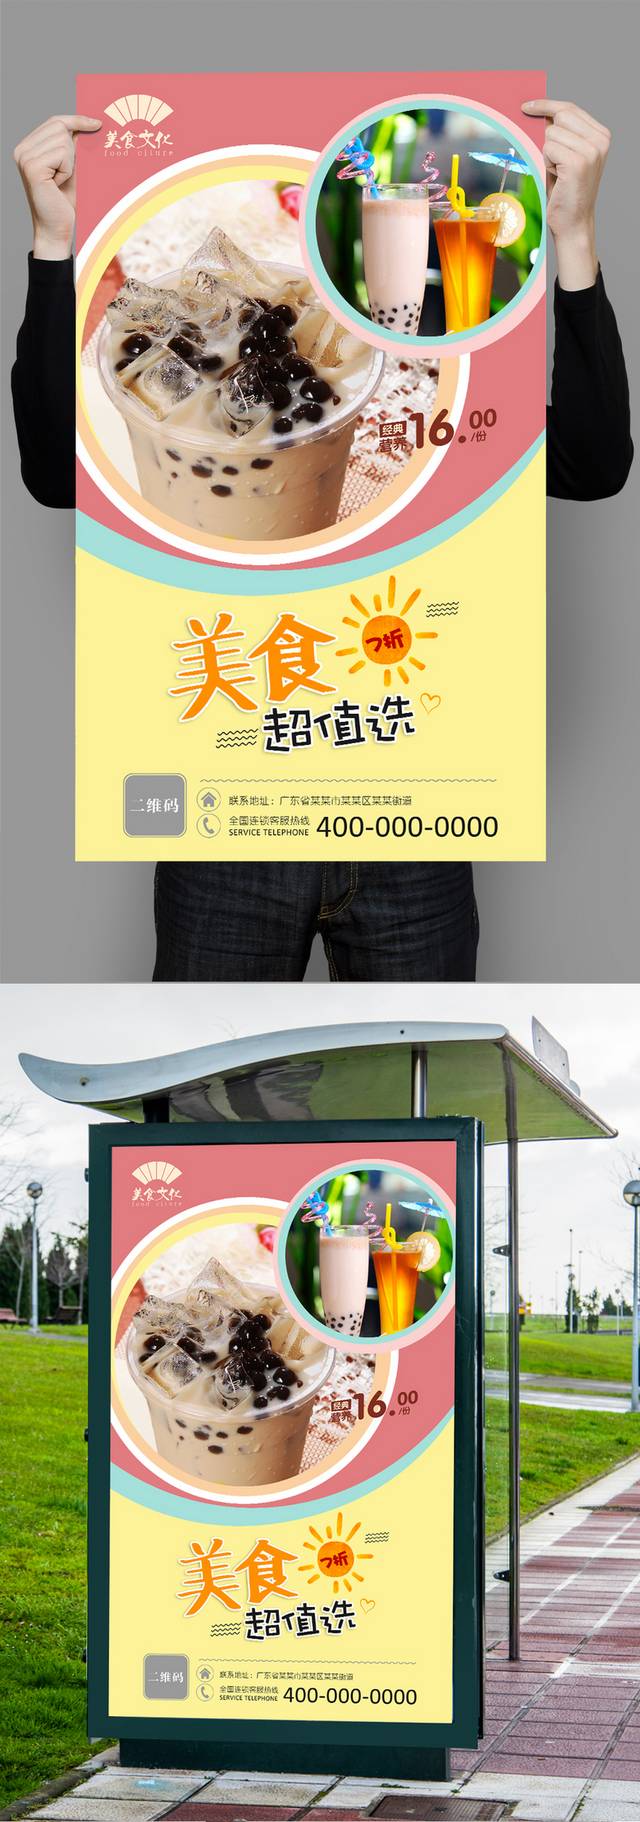 奶茶店奶茶促销宣传海报设计